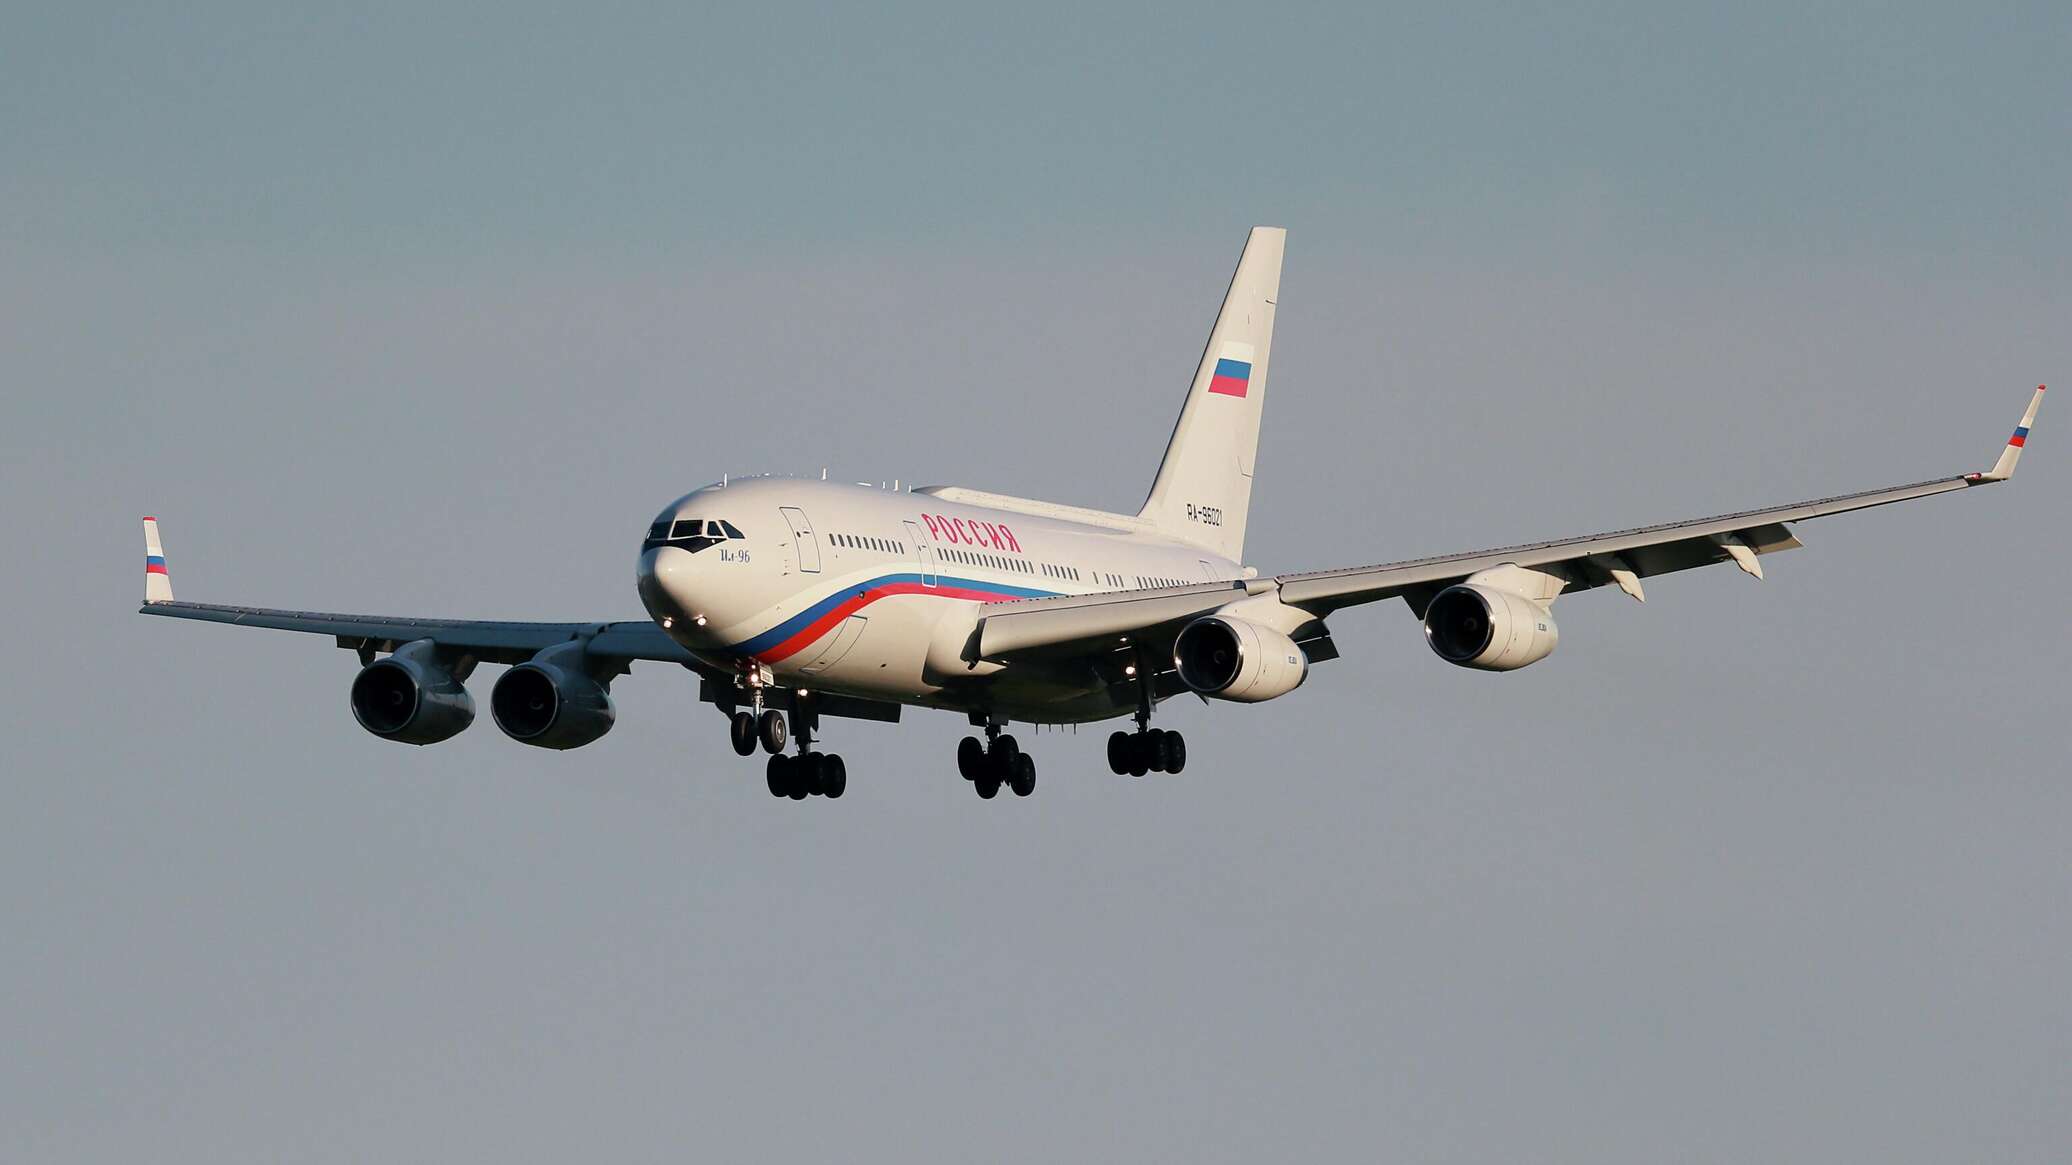 Президентский самолет. Ил-96 президентский борт. Самолет Путина ил 96. Ил-96-300 президентский.